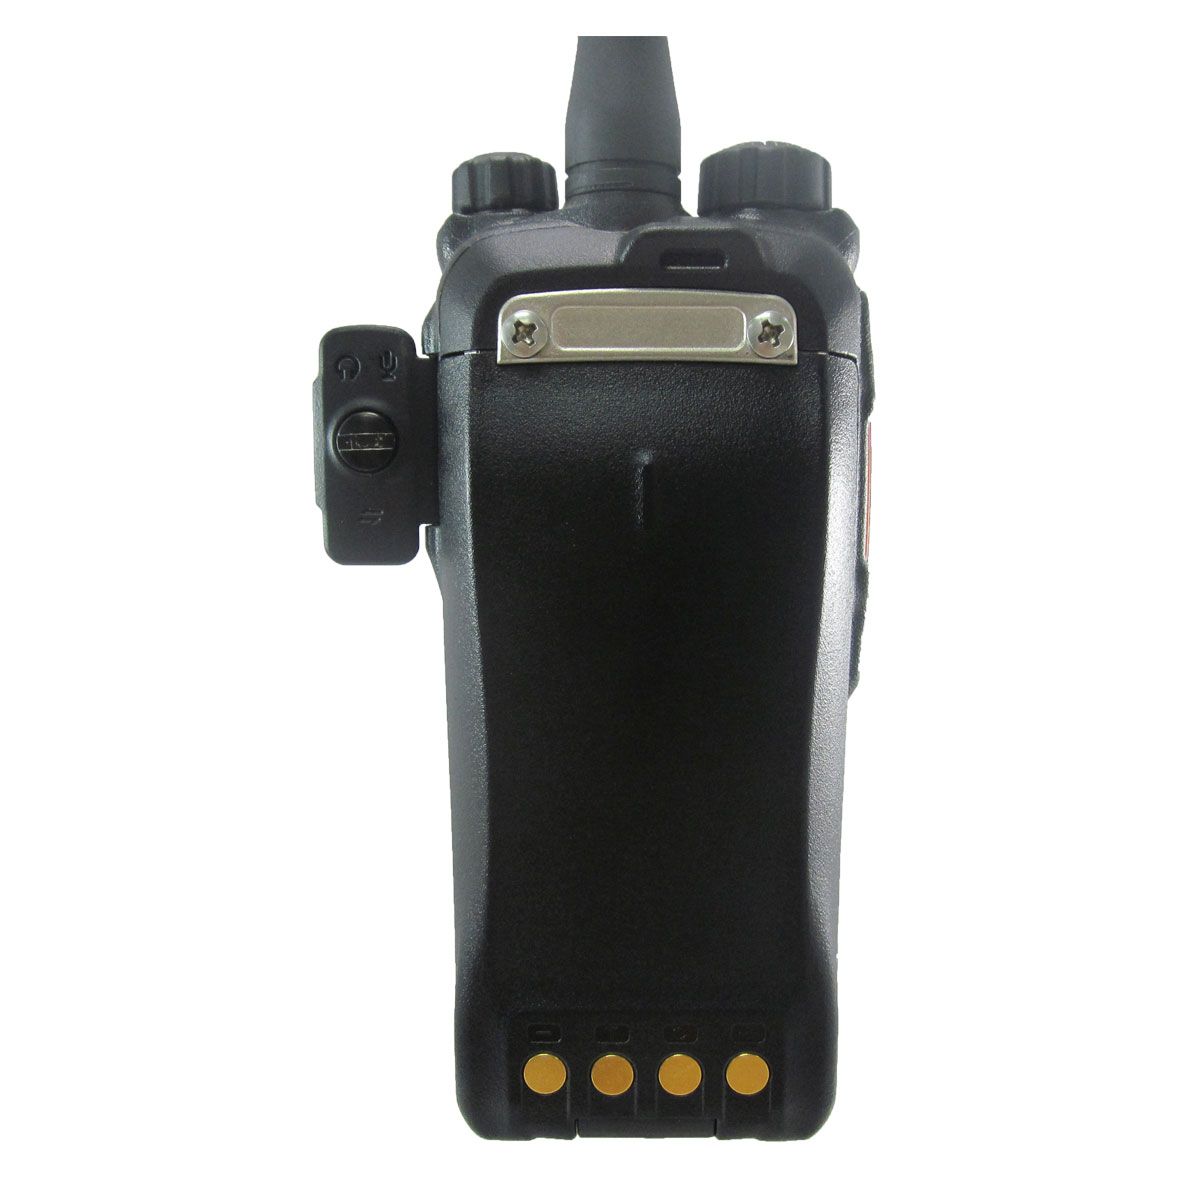 Radio Hytera PD706G Digital PD706G-V VHF 136-174 MHz